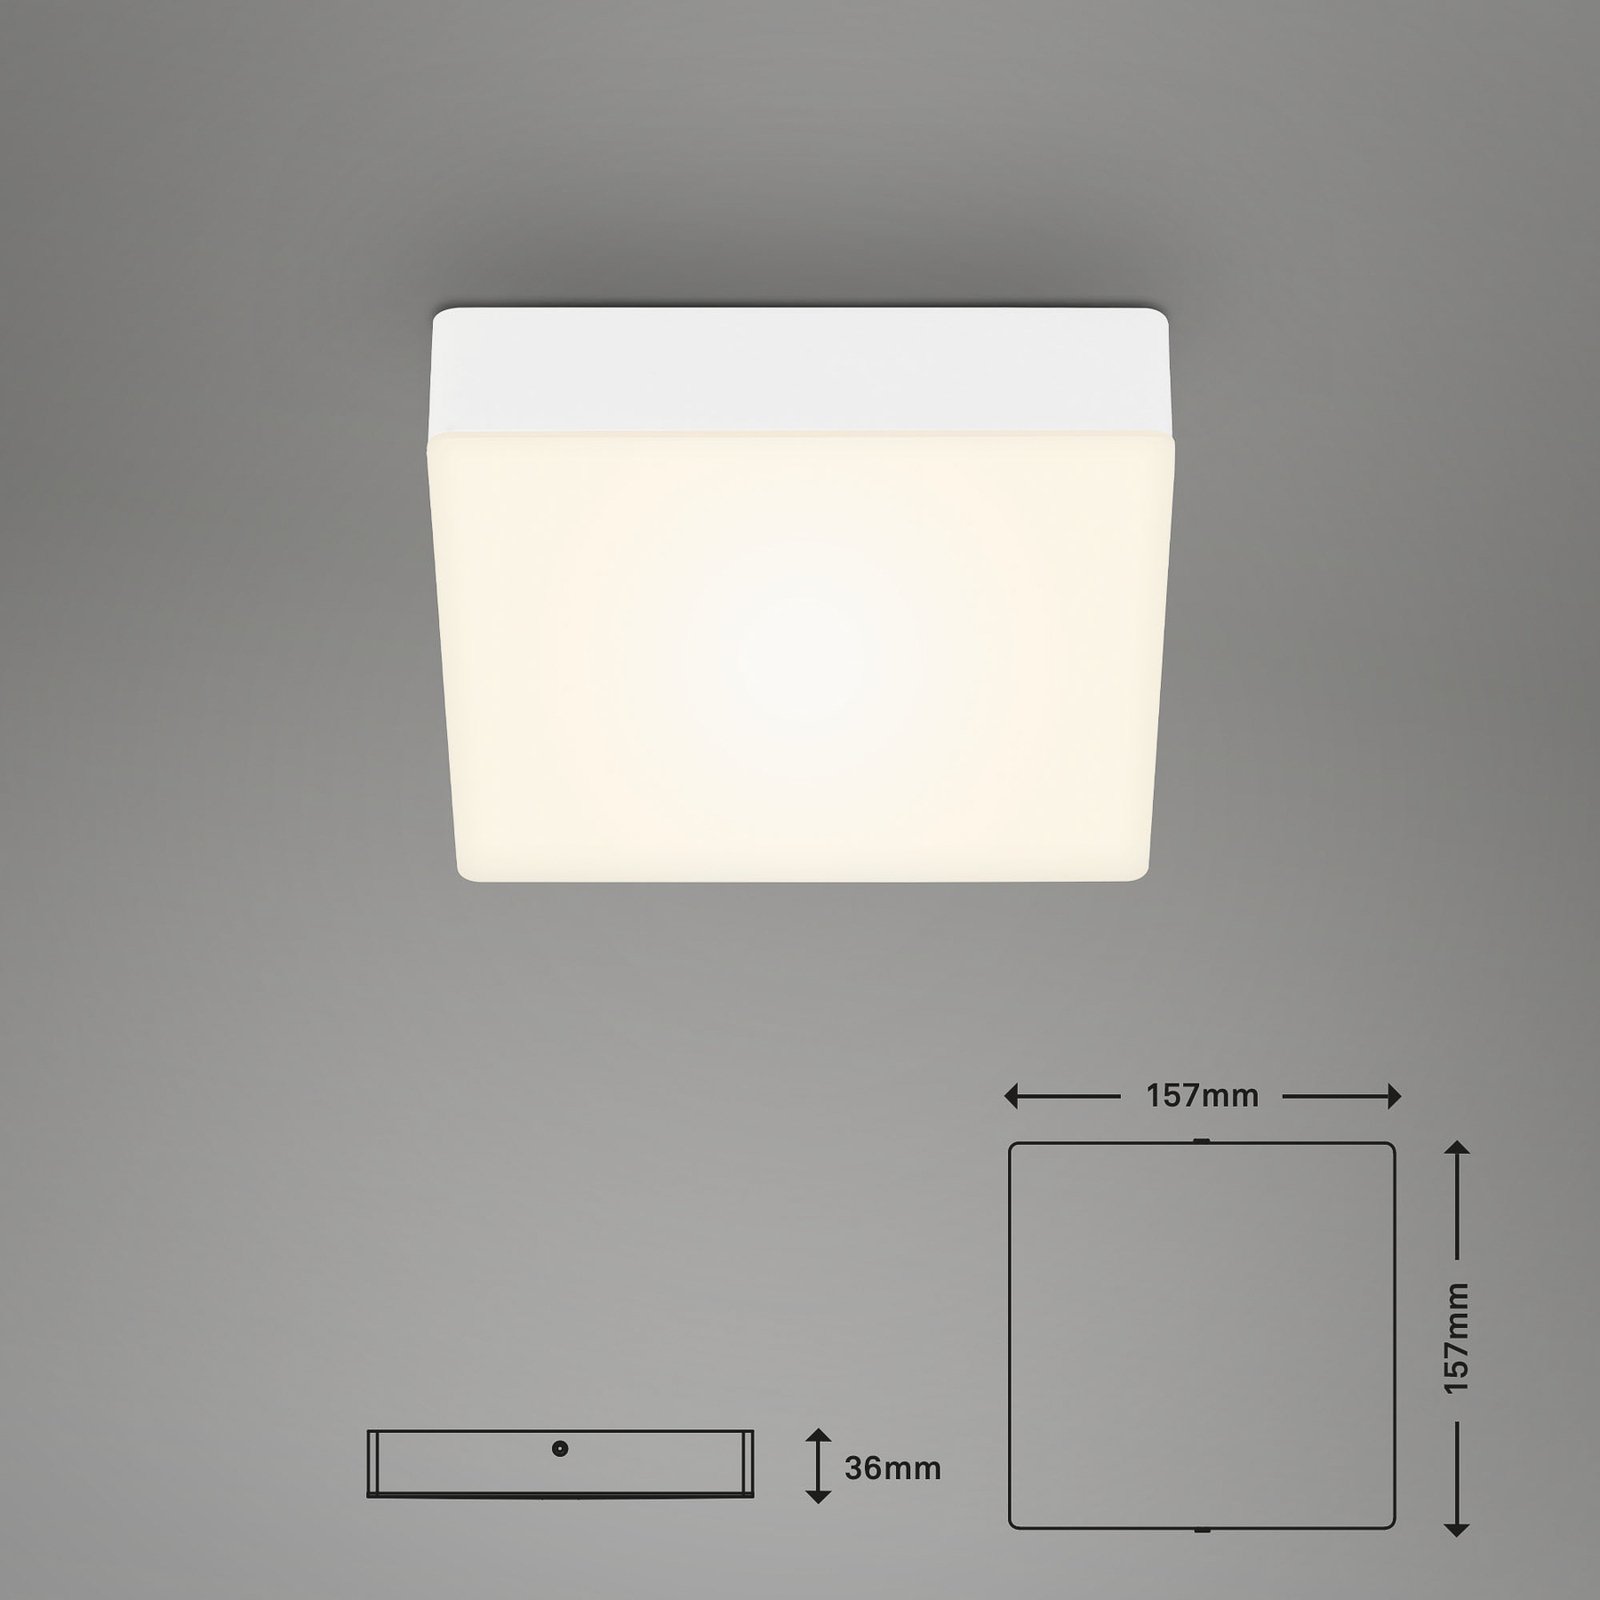 Flame LED ceiling light, 15.7 x 15.7 cm, white